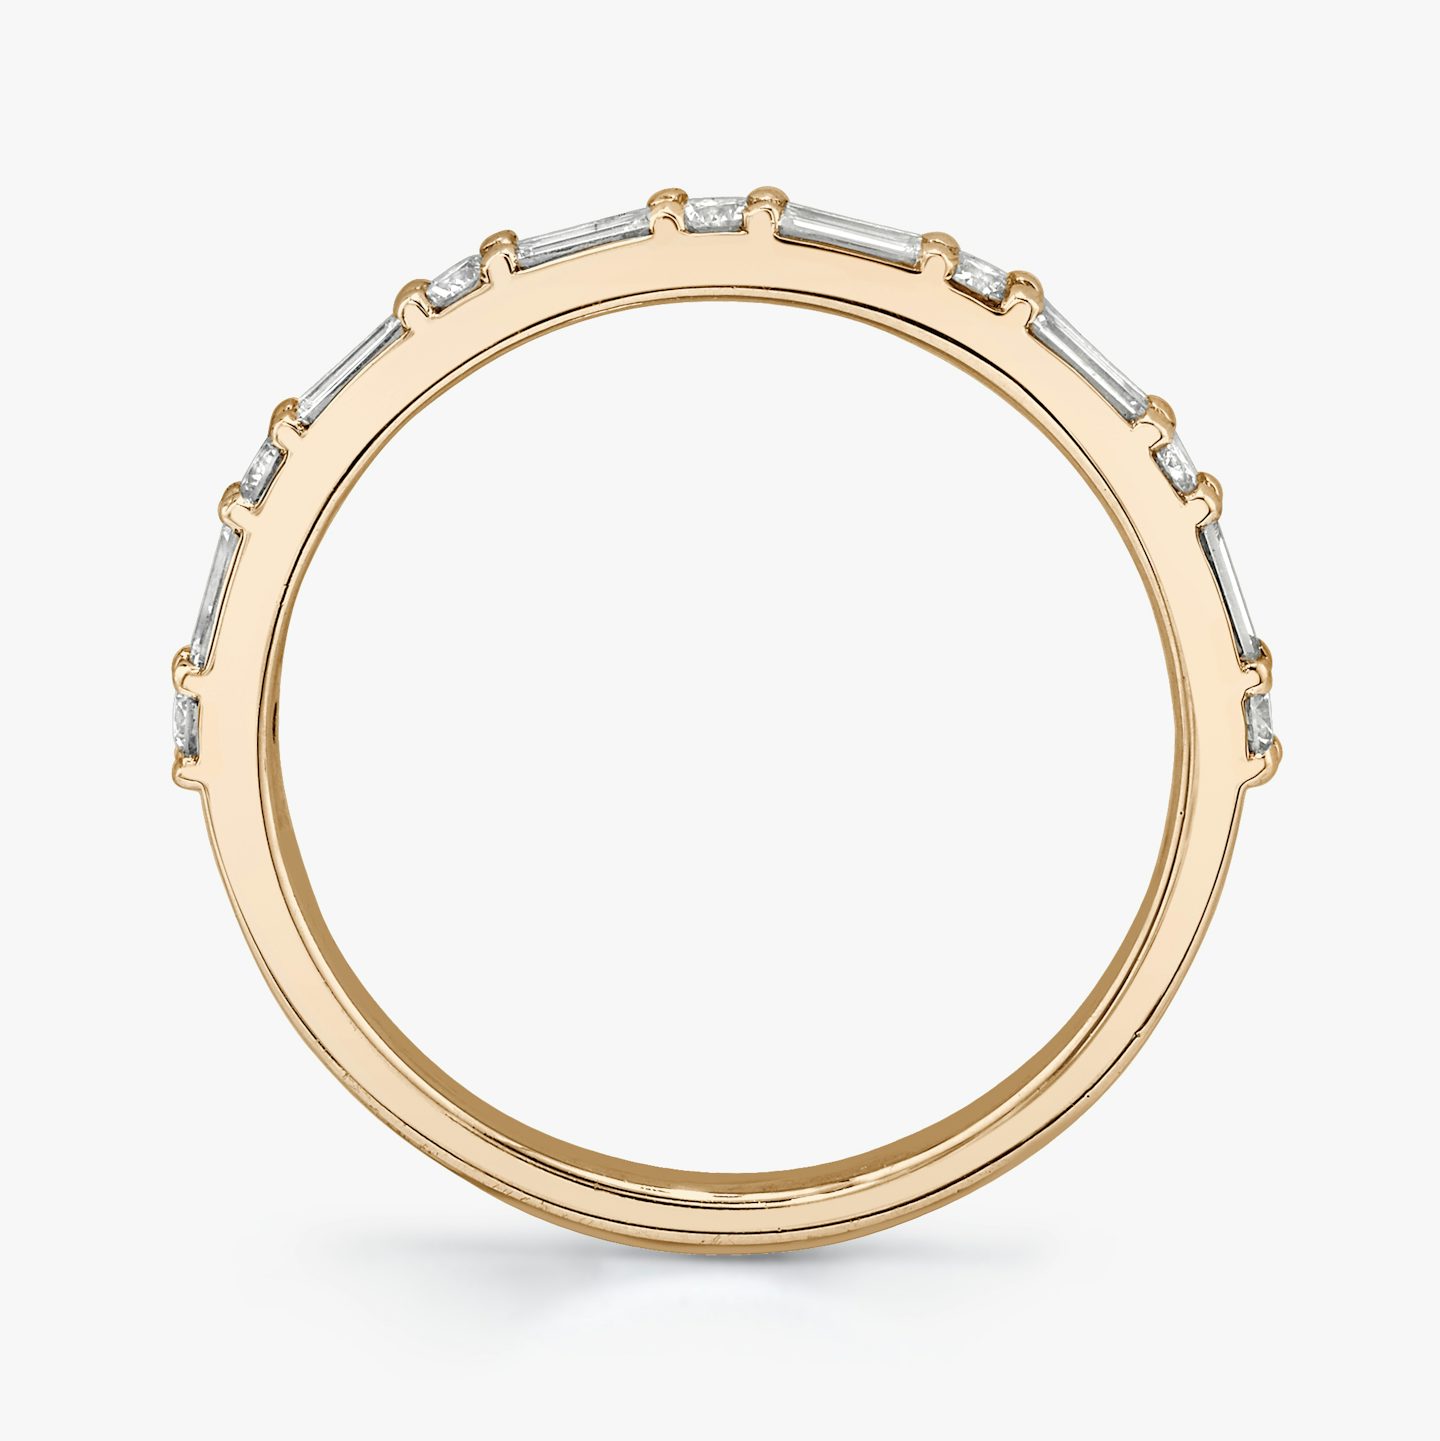 Alternating Shapes Ring | Rund | 14k | 14k Roségold | Ringstil: Halb besetzt